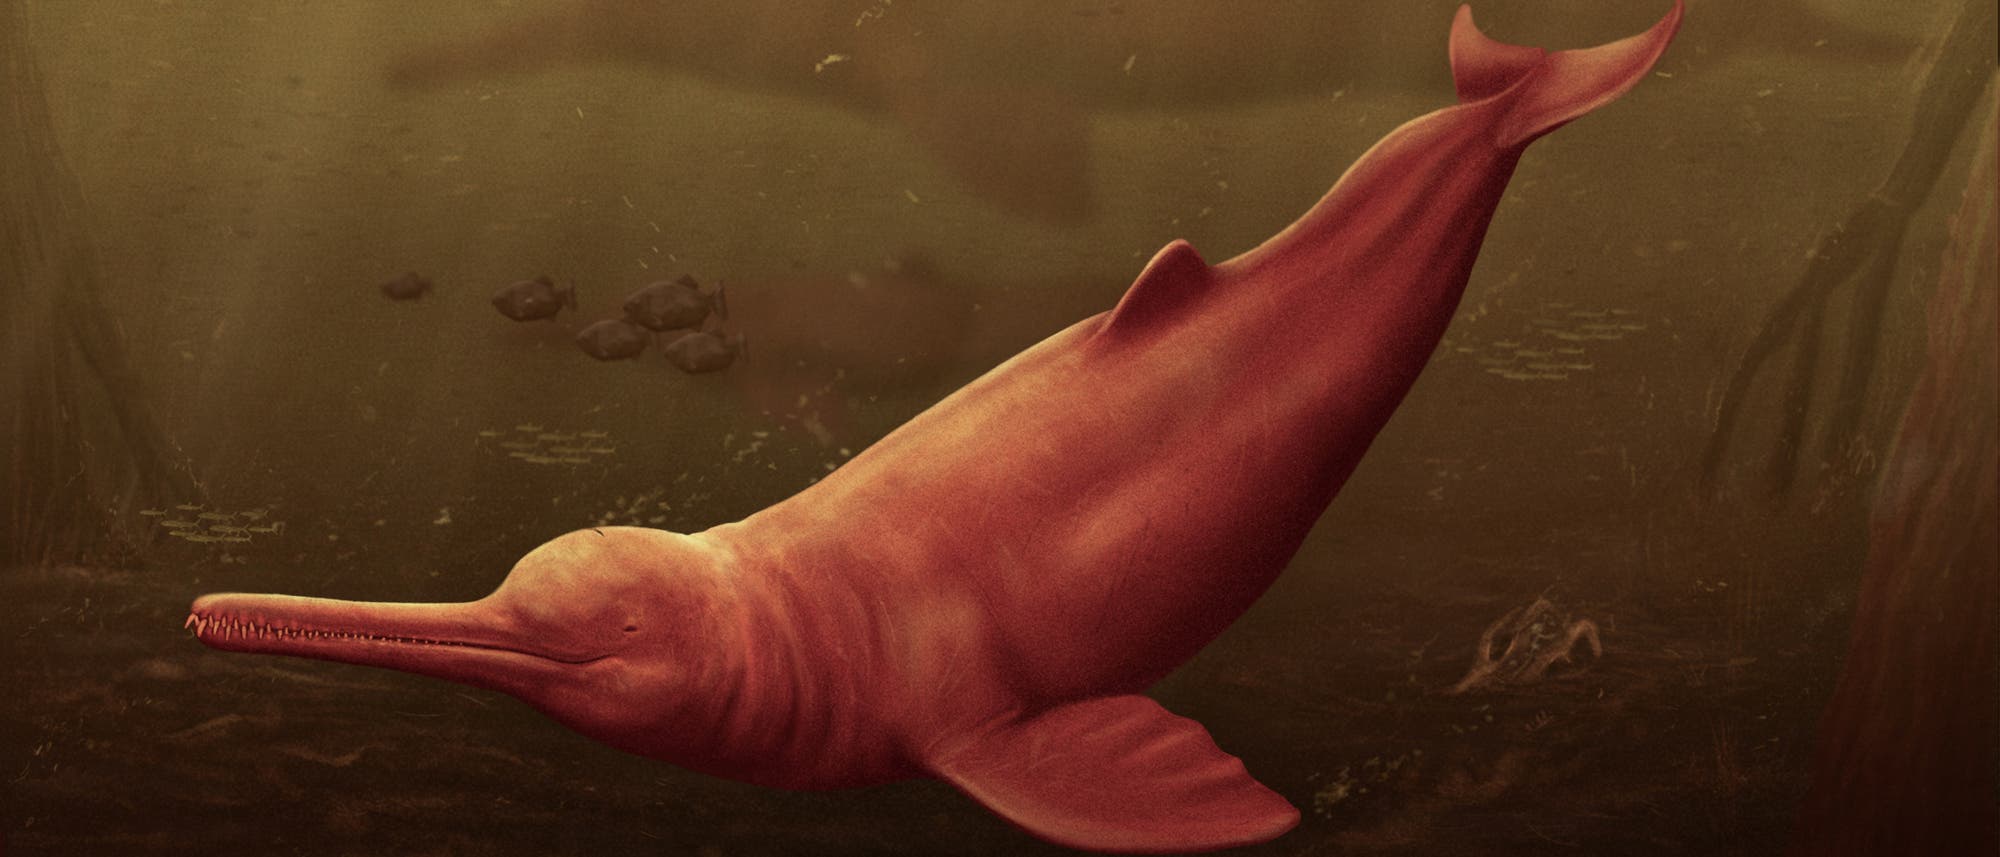 Ein rosafarbener Flussdelfin schwimmt in einer Illustration im bräunlich-trüben Wasser eines Amazonasflusses. Im Hintergrund sieht man die Silhouette eines Artgenossen